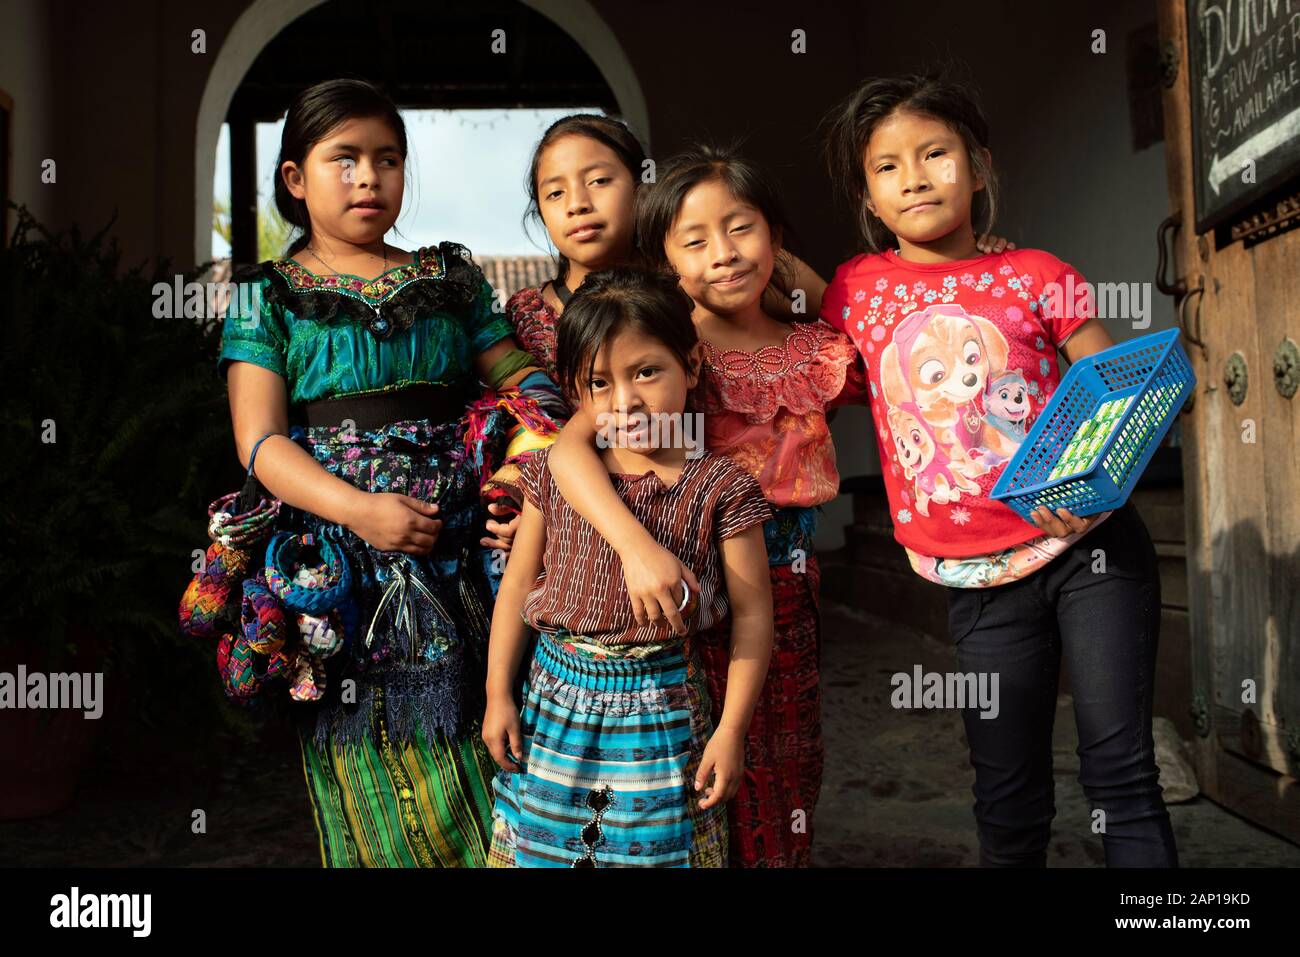 Photo de groupe, les enfants autochtones locales à Antigua, Guatemala. Certains portent la tenue traditionnelle, certains vendent des souvenirs faits à la main. Déc 2018 Banque D'Images